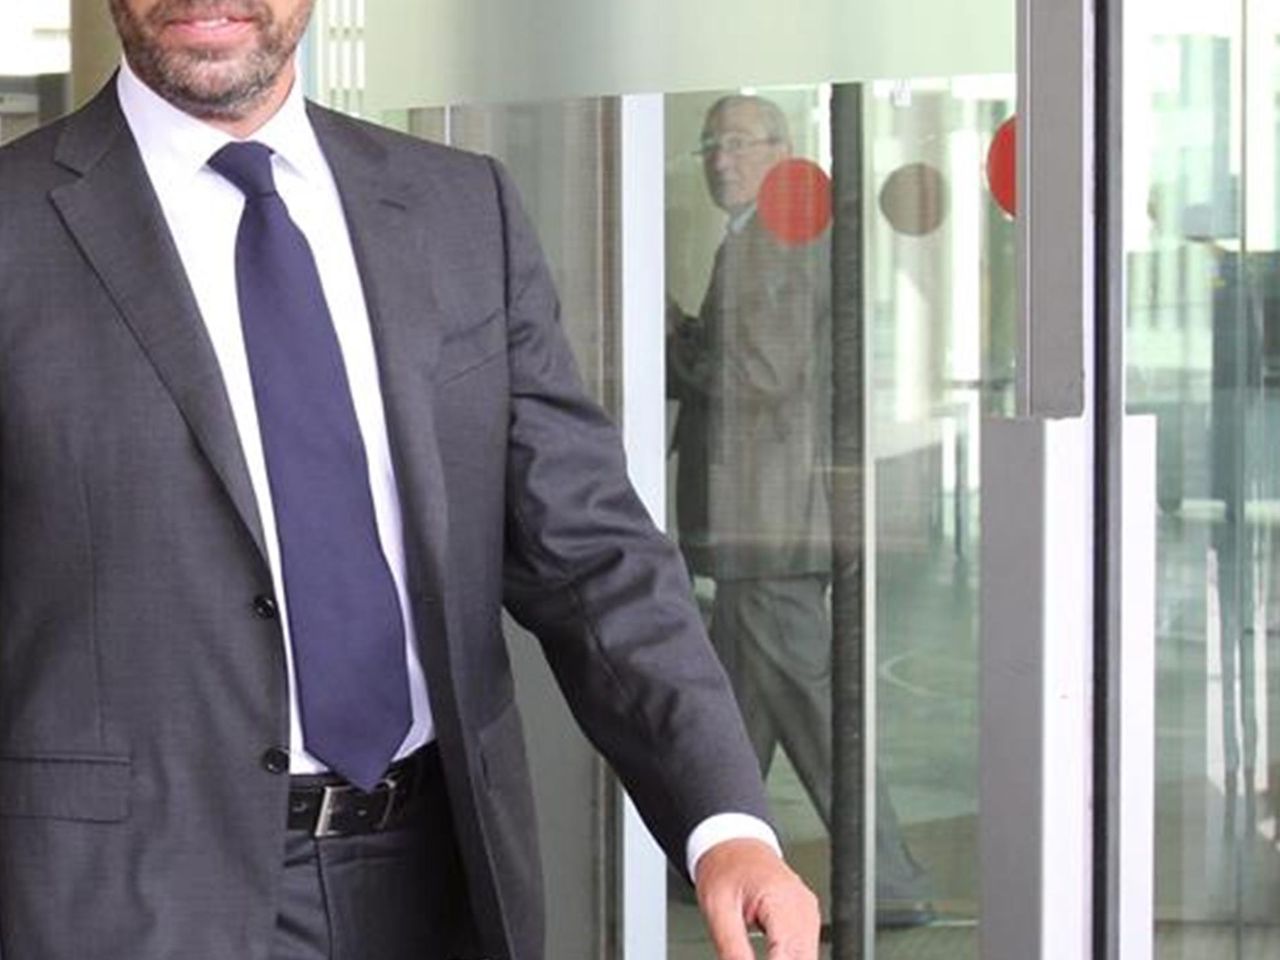 Juzgan expresidente del Barça Sandro Rosell por blanquear 20 millones - Eurosport